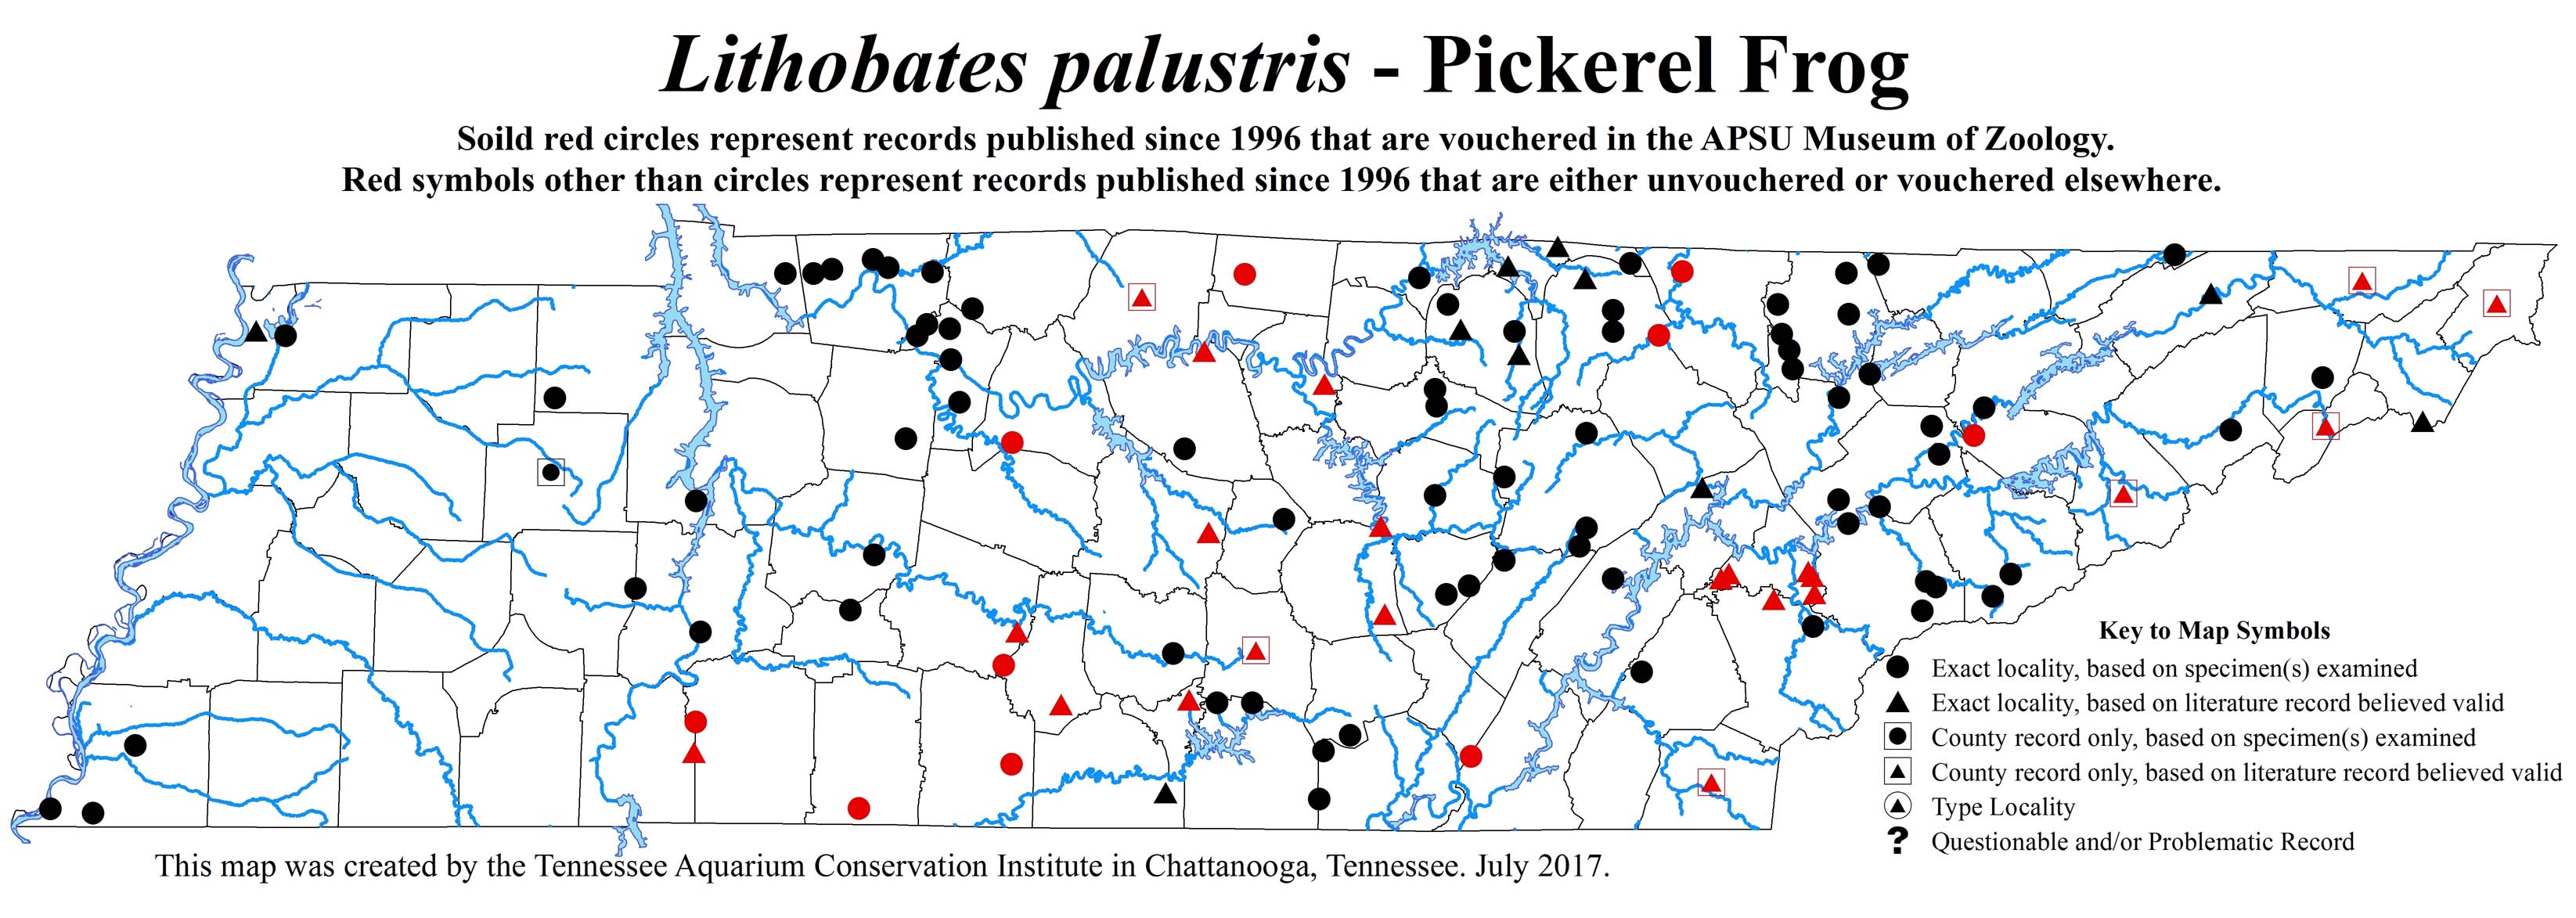 Update to Lithobates palustris